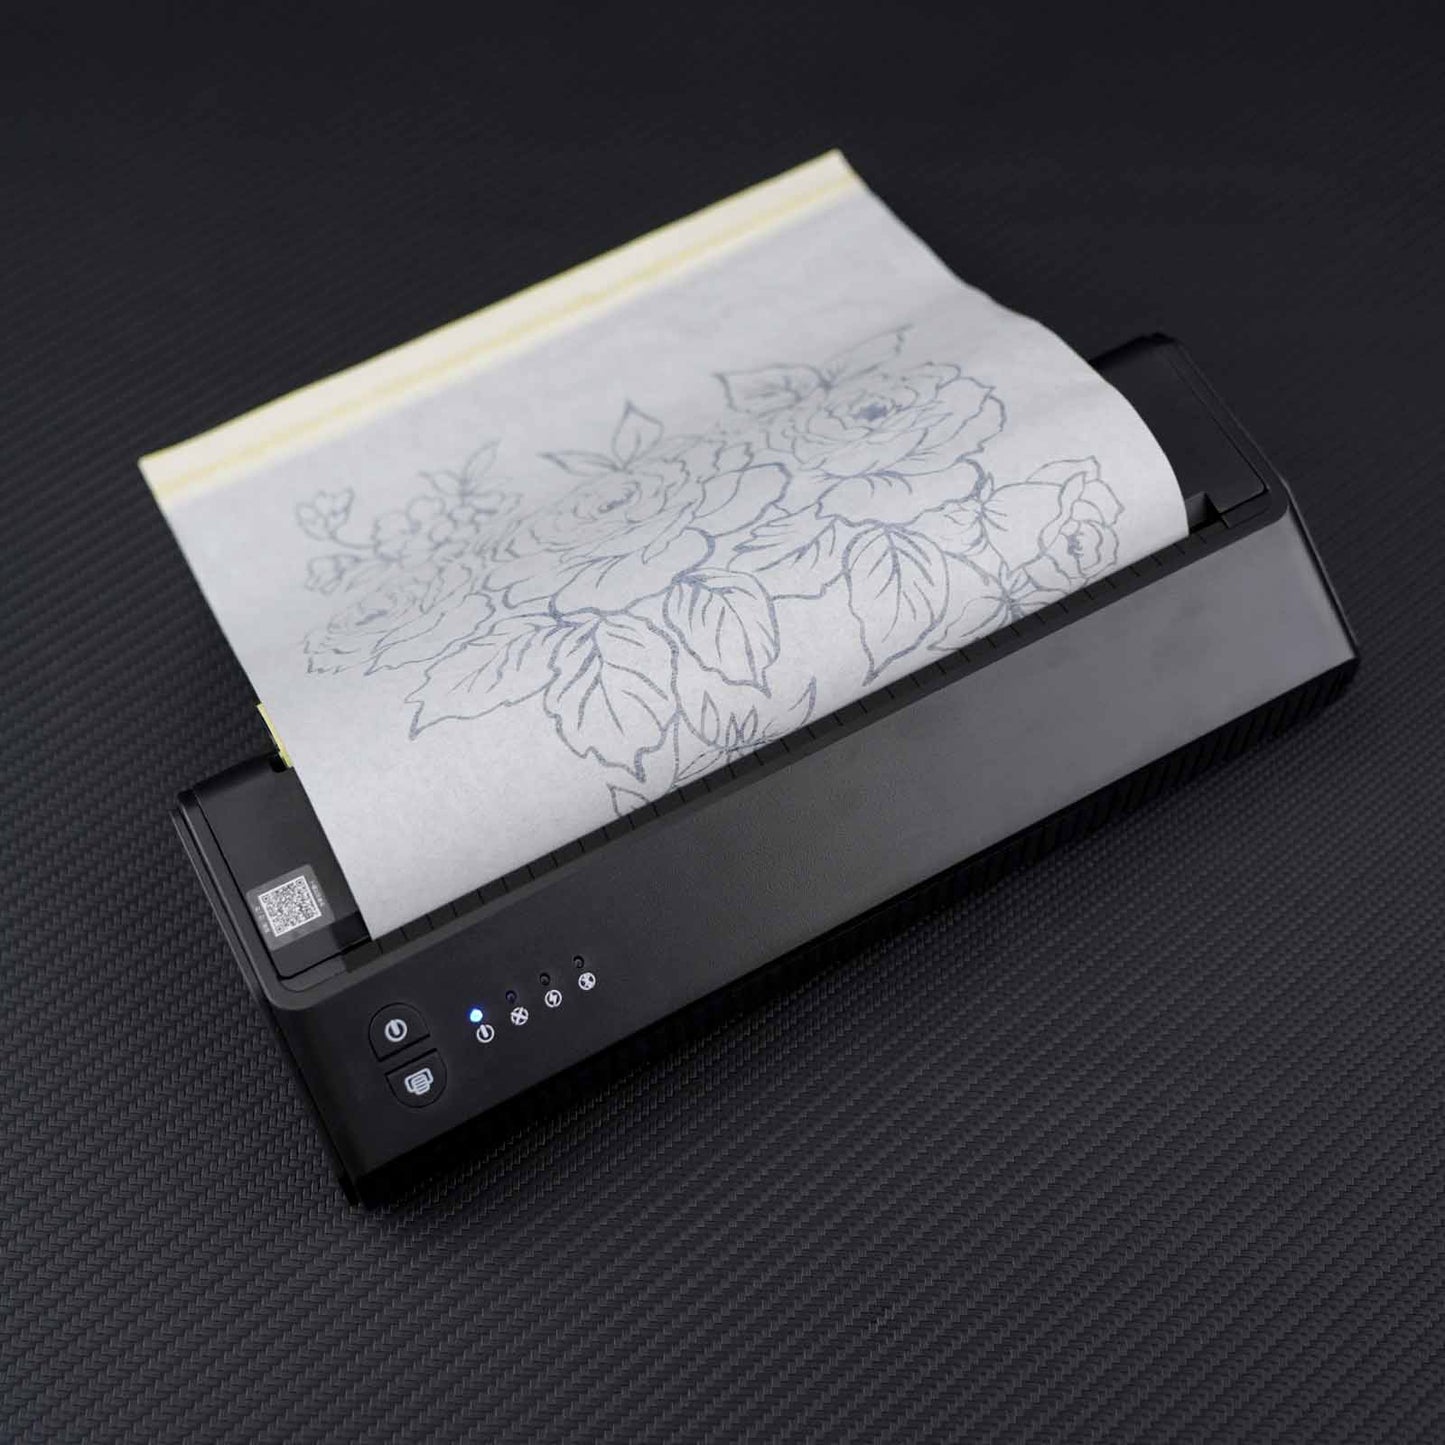 Bluetooth Portable Tattoo Thermal Printer Professional Tattoo